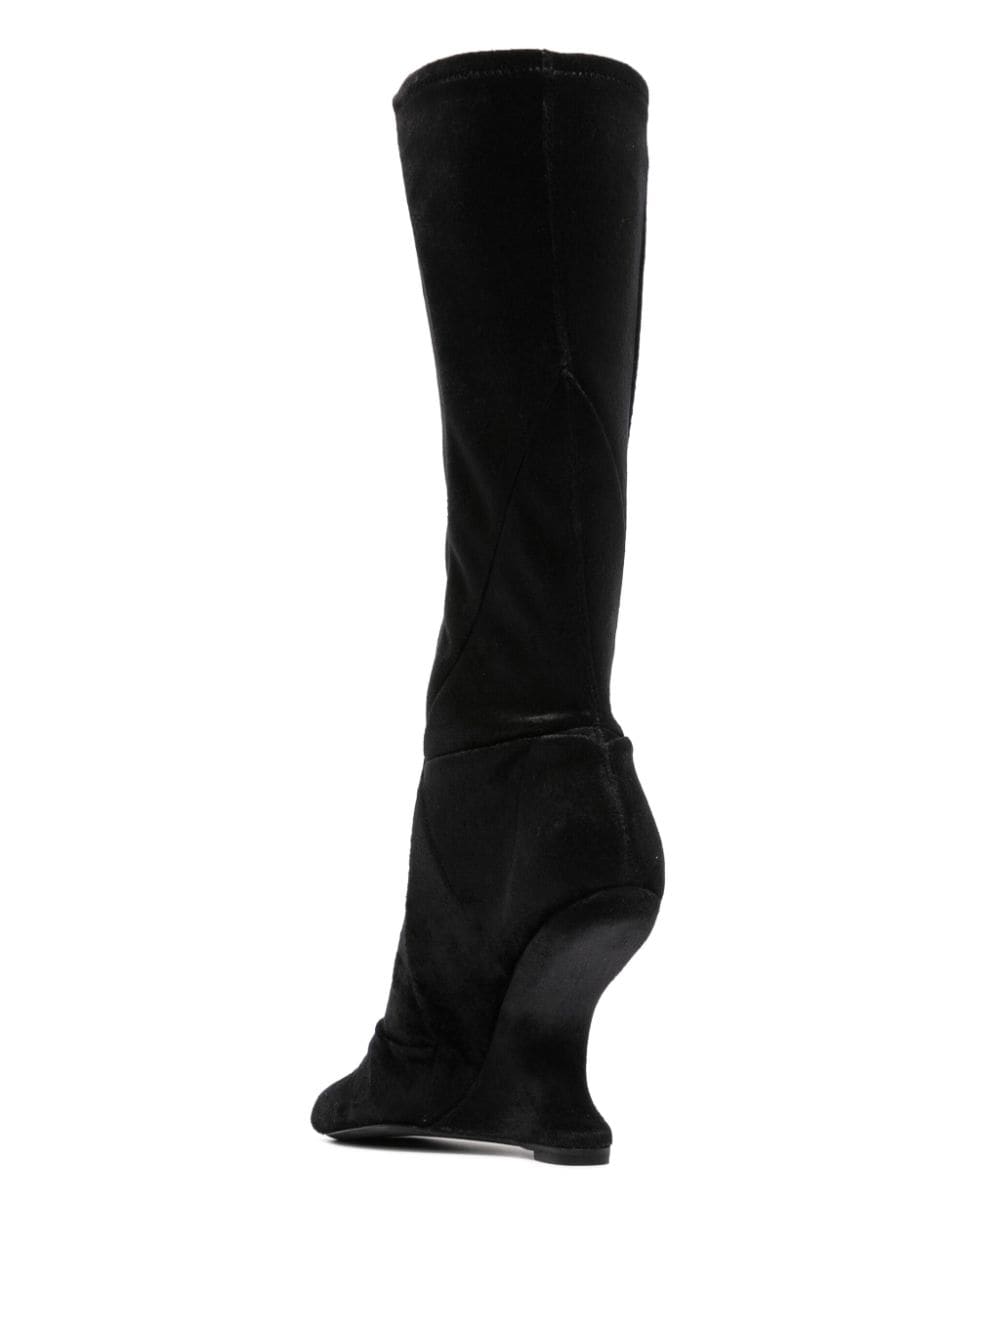 Bốt gót cao đến gối màu đen sang trọng cho phụ nữ